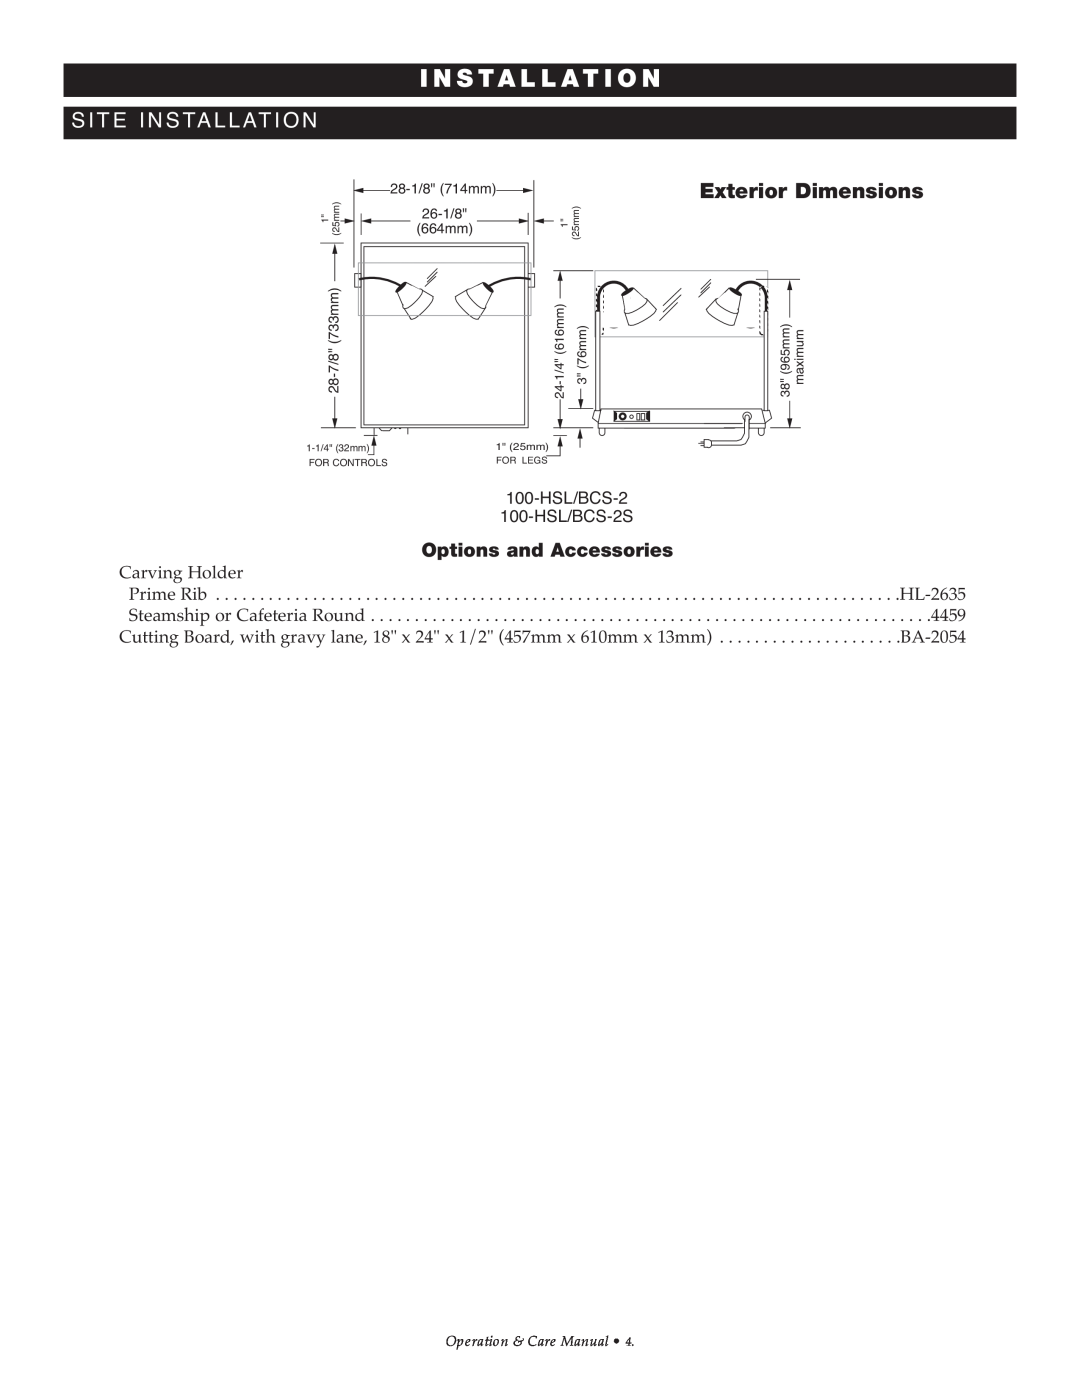 Alto-Shaam 100-HSL/BCS-2S manual In St A L L At Ion, Exterior Dimensions, 1 25mm, m56mumi 9xa 